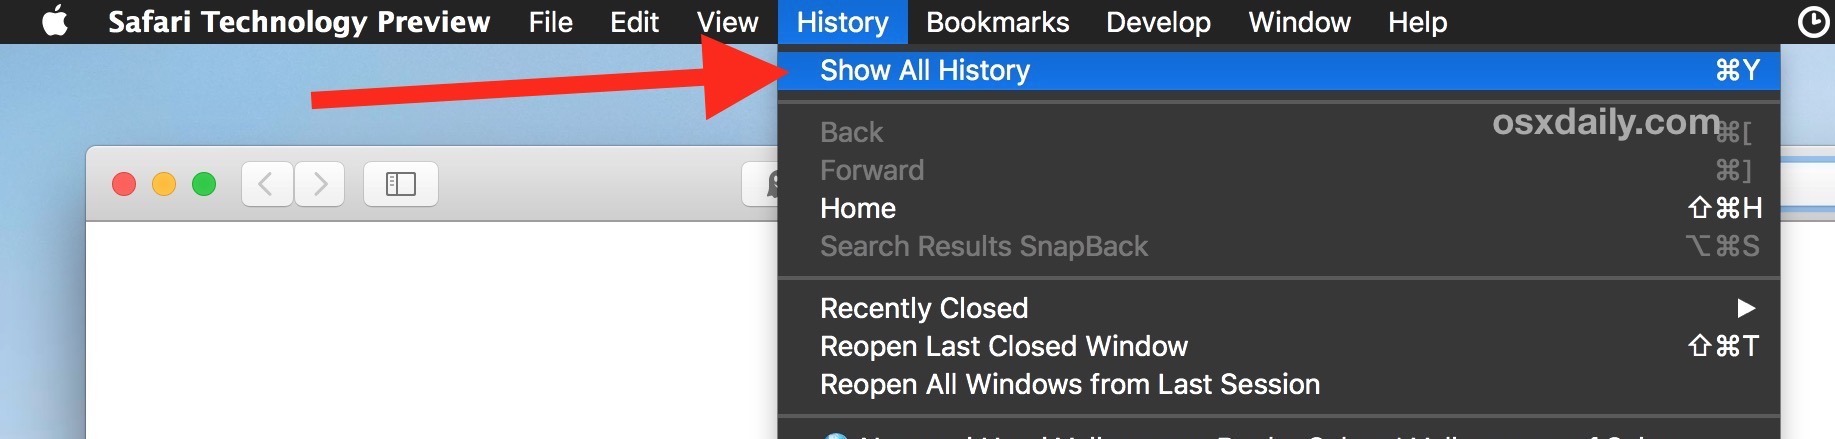 Mostra tutta la cronologia del browser in Safari su Mac